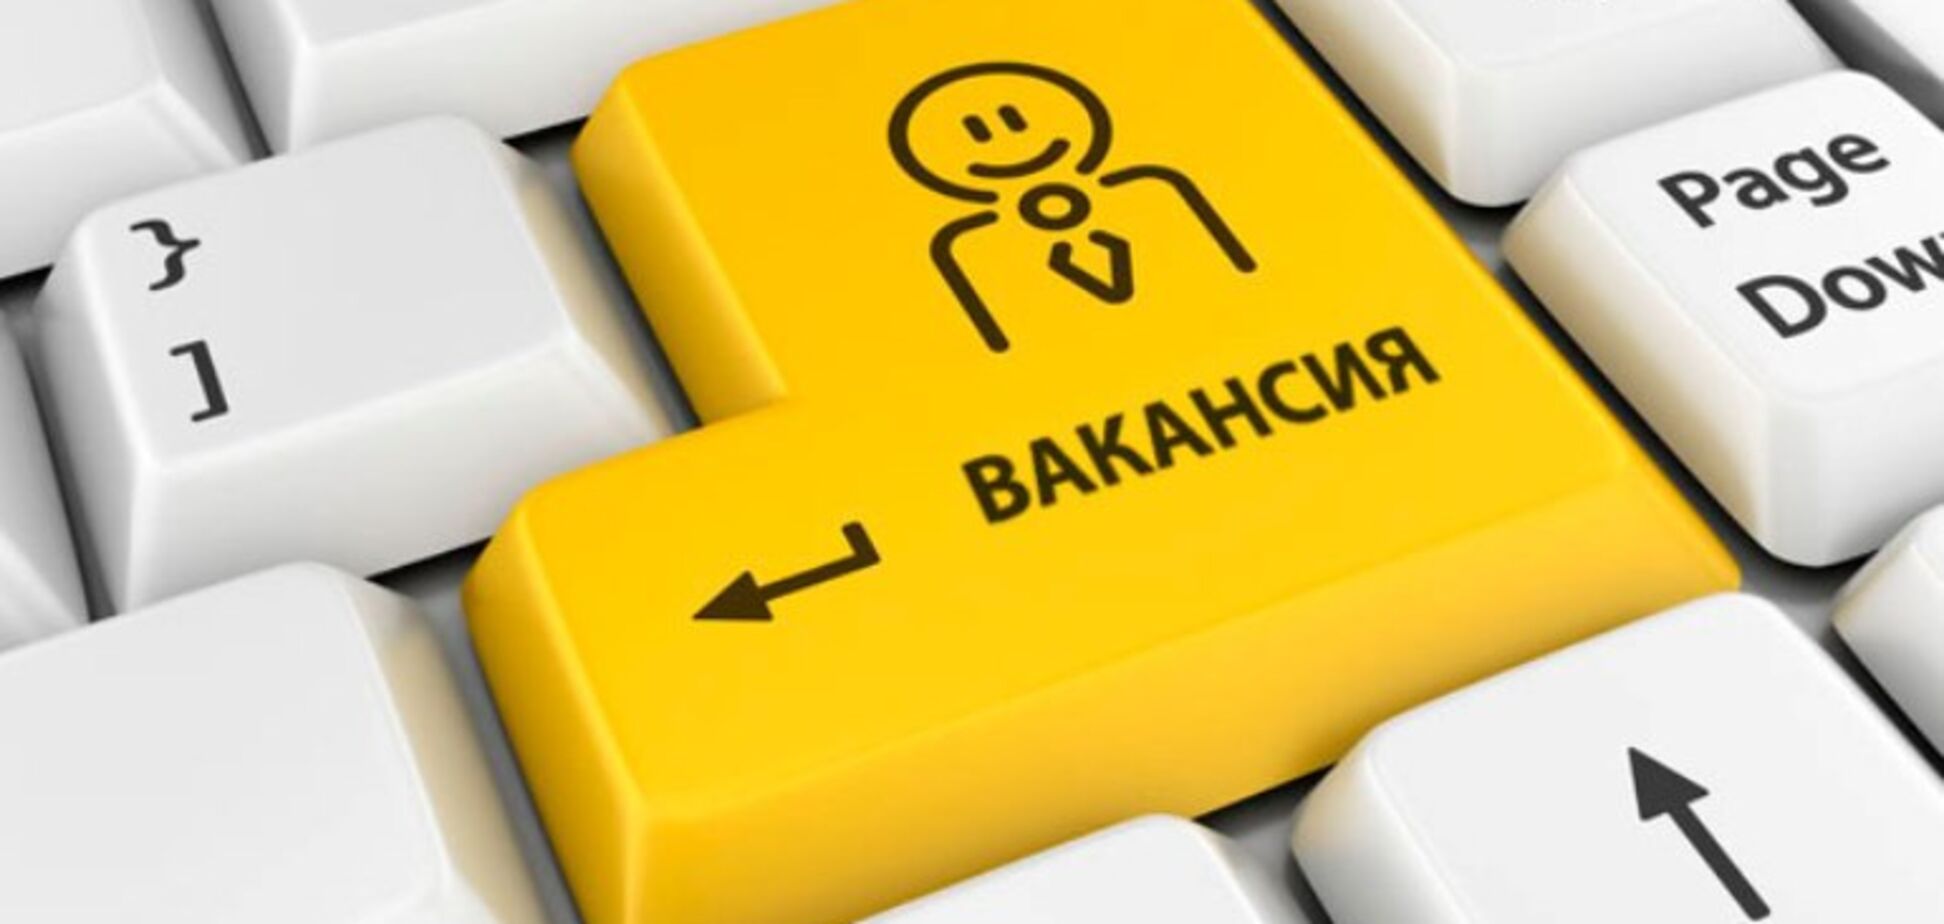 Подстава или черный пиар? В сети спор из-за 'интимной' вакансии в украинской компании